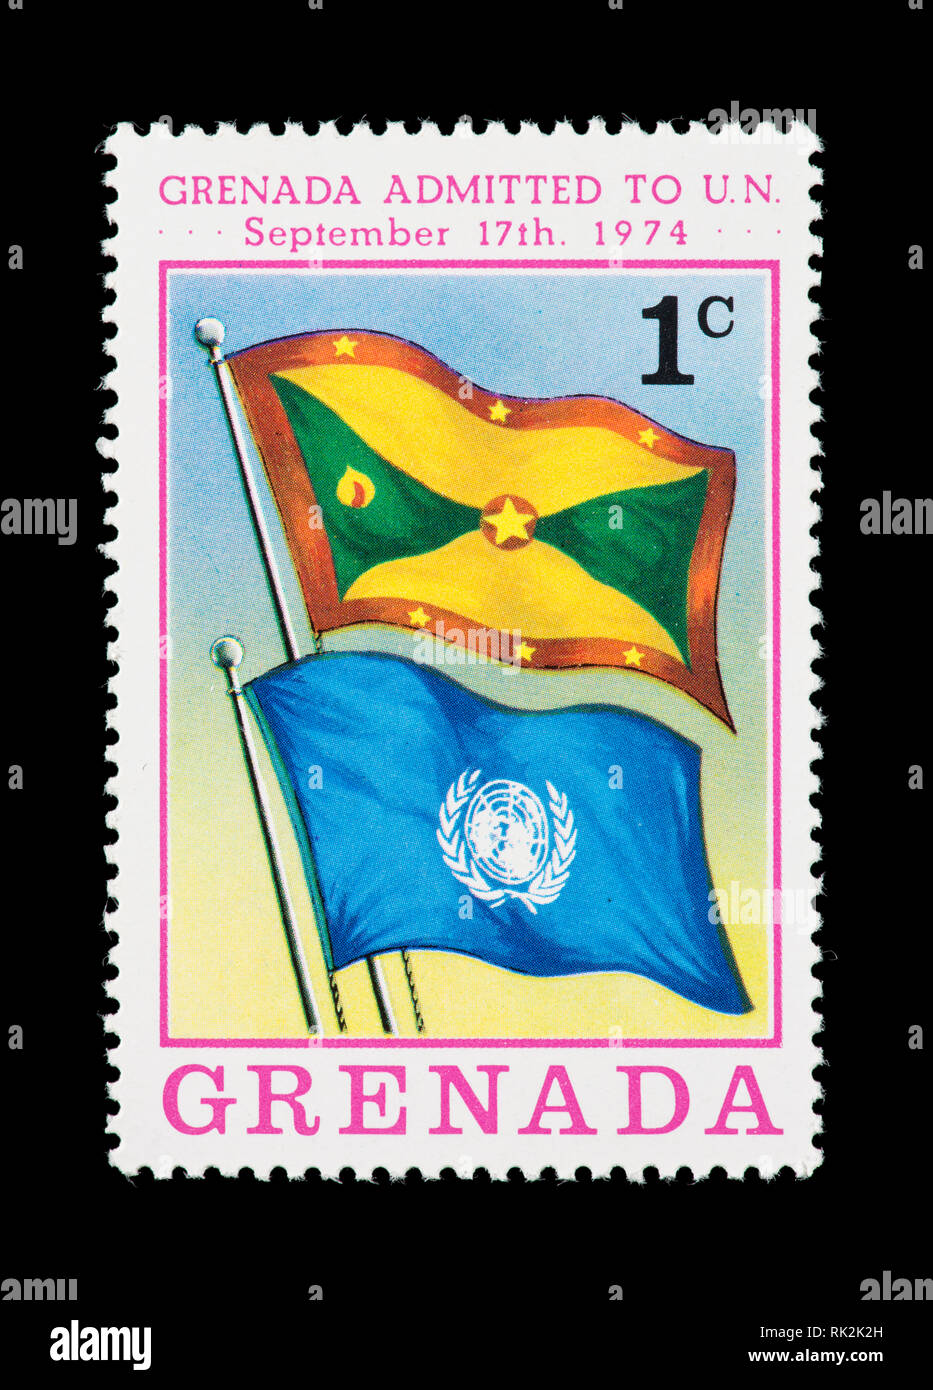 Briefmarke von Grenada Darstellung der Granada und Vereinten Nationen Fahnen, die Aufnahme in die Vereinten Nationen im Jahr 1974. Stockfoto